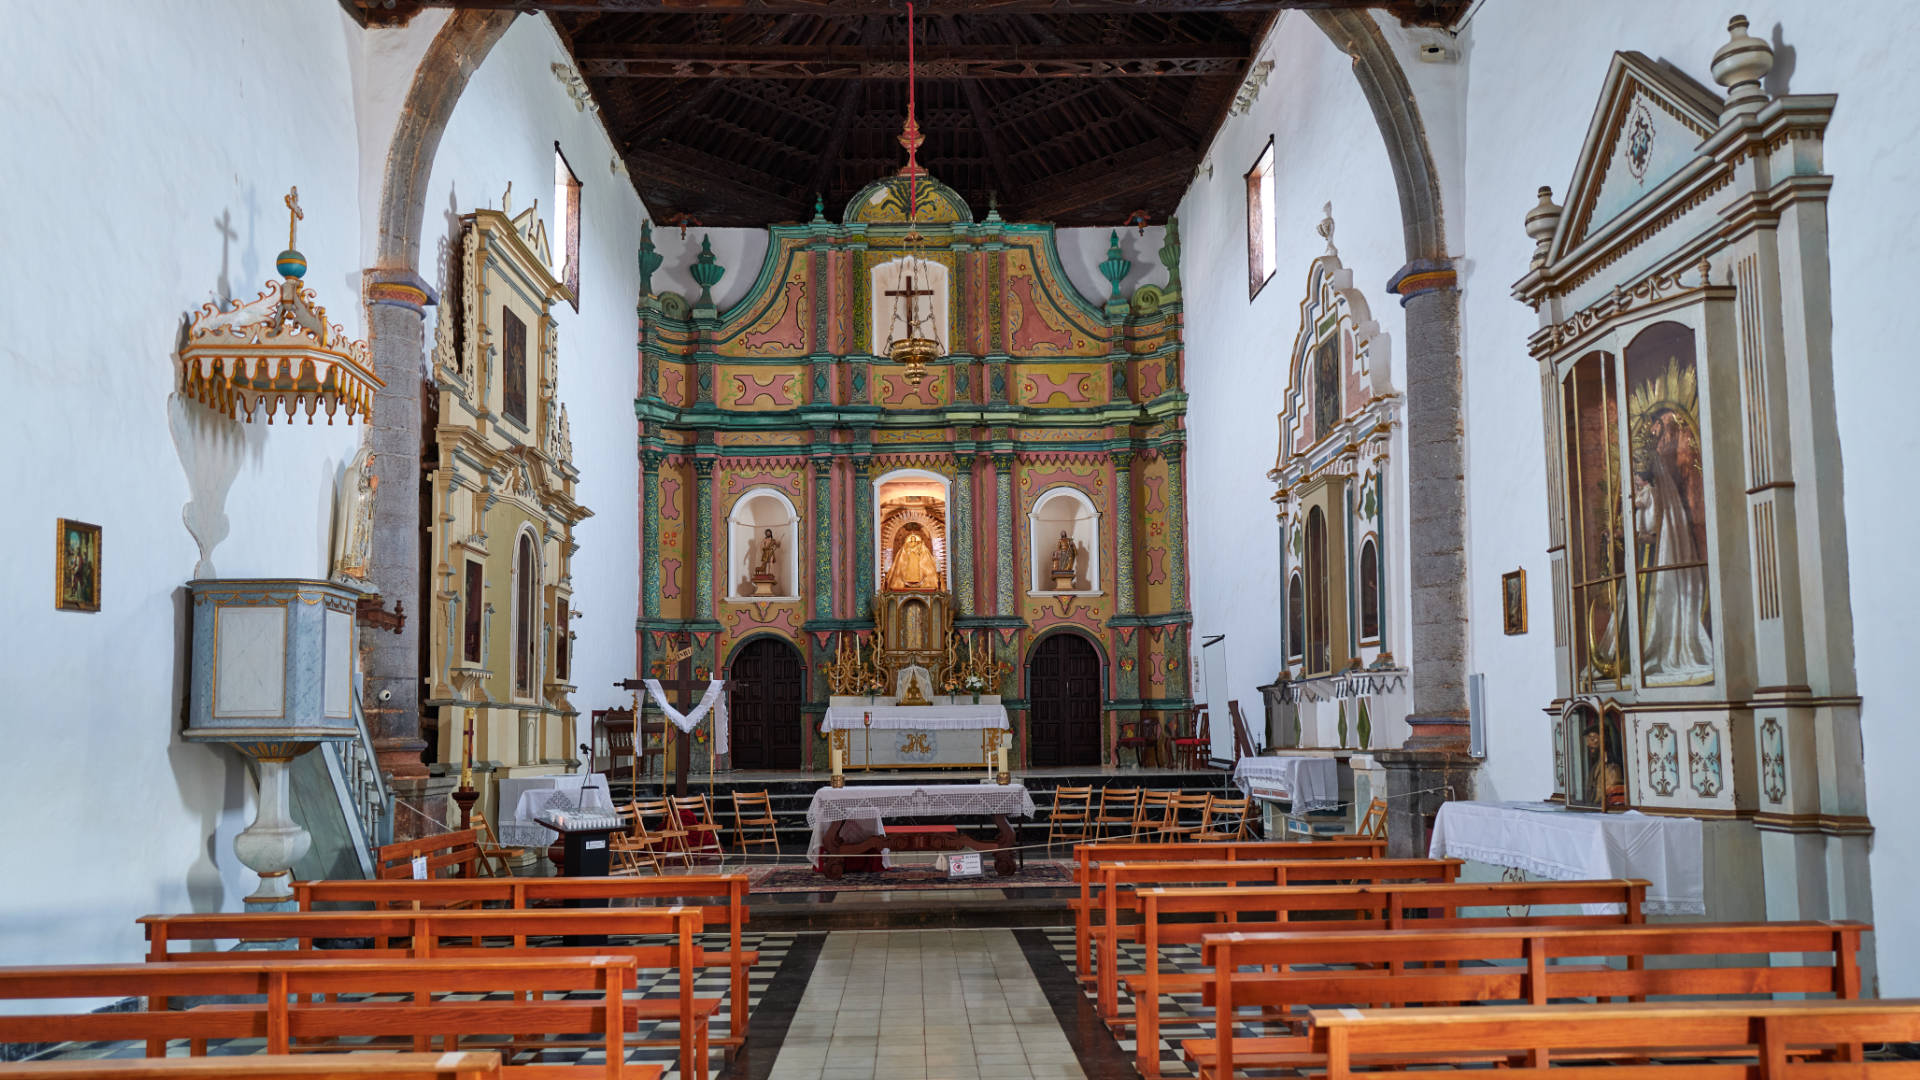 Iglesia Nuestra Señora de la Antigua Fuerteventura.